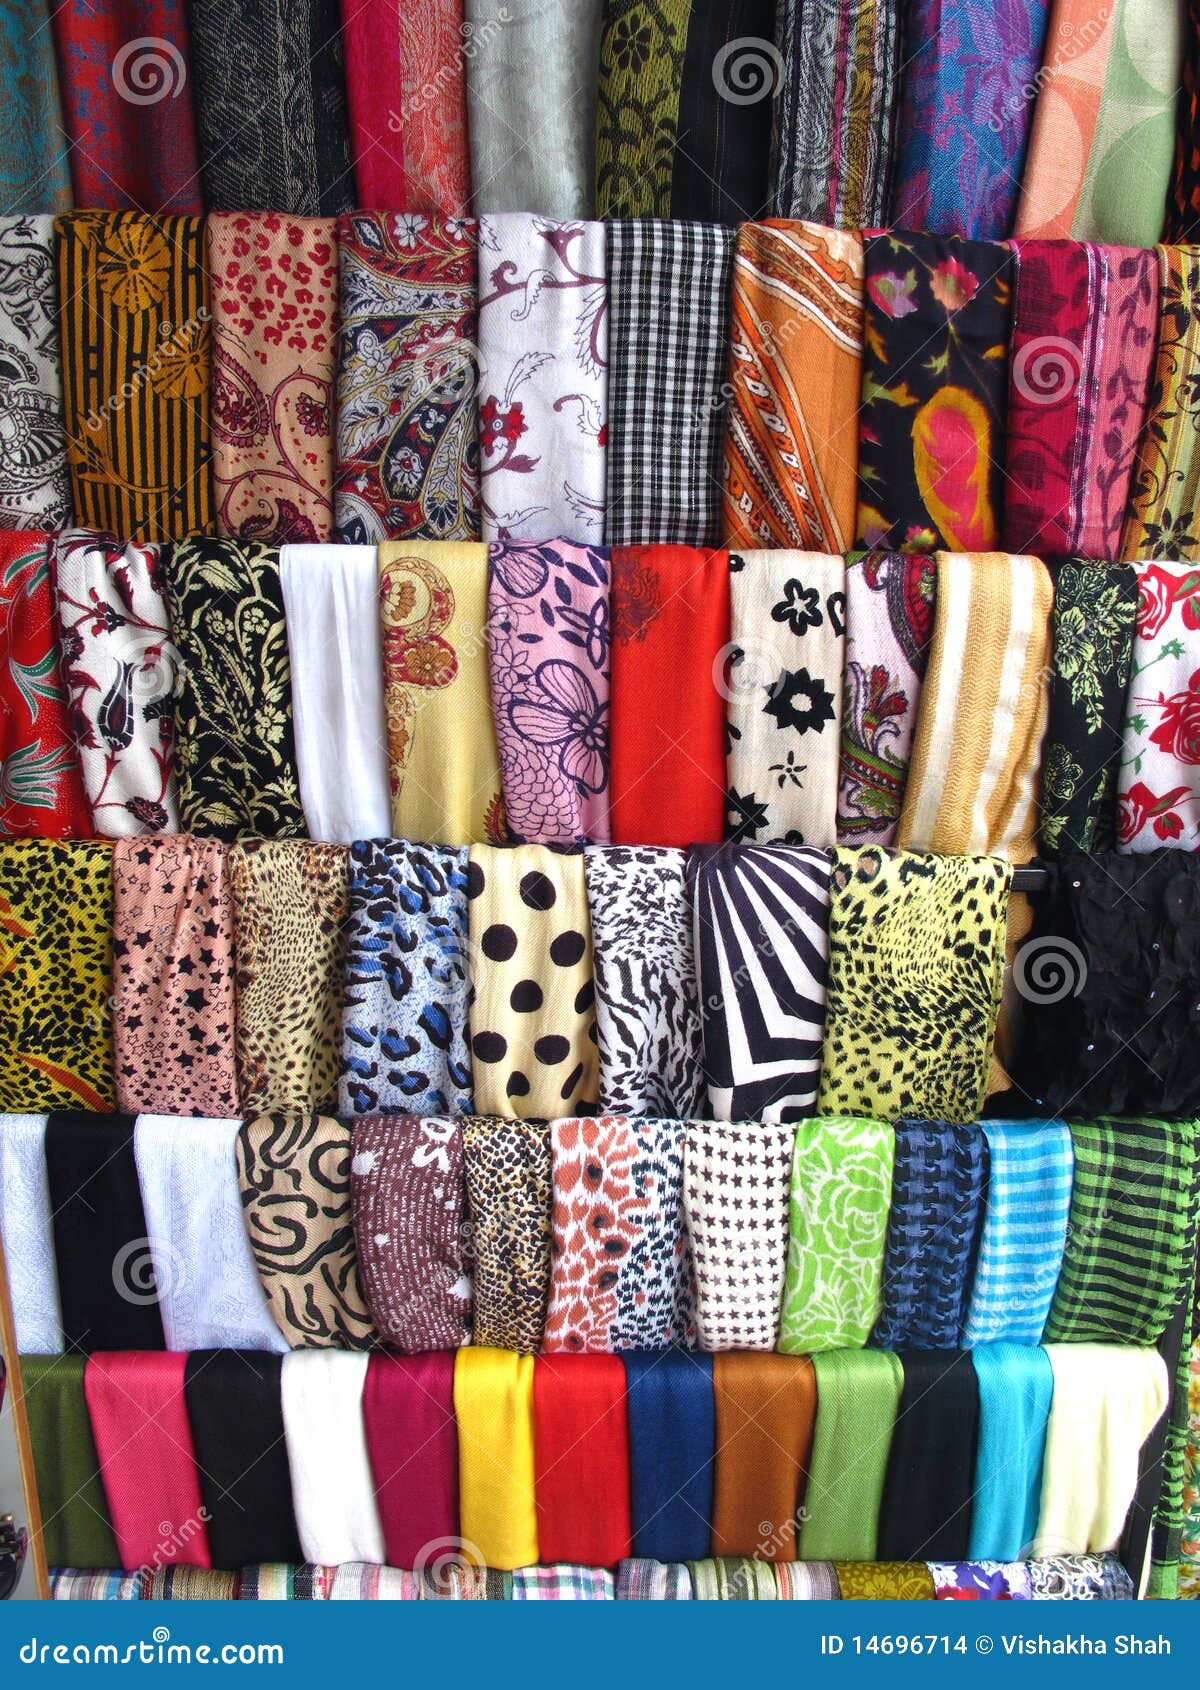 variety of fabrics